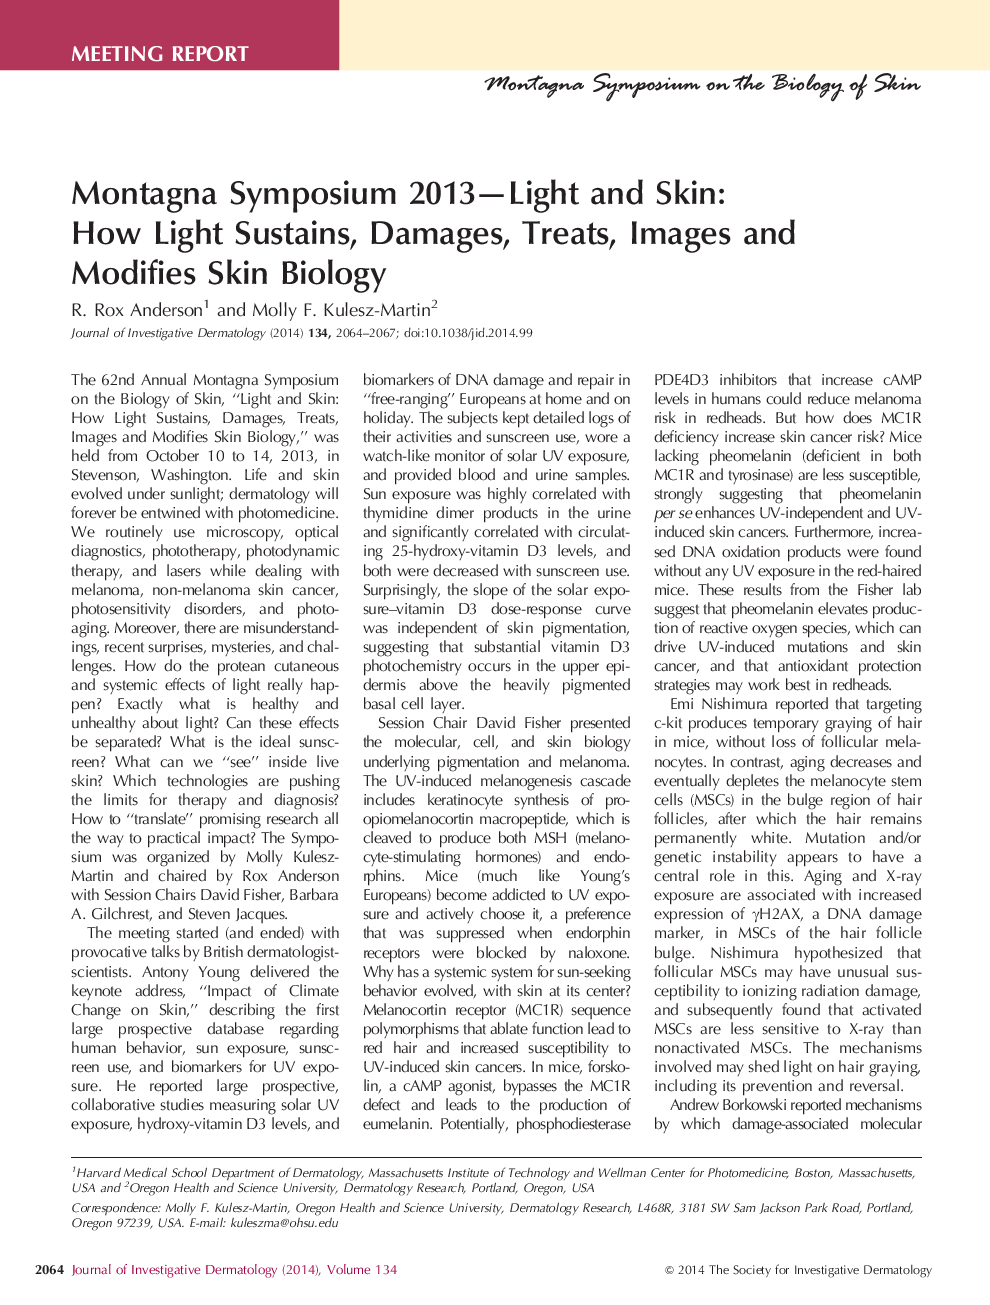 مونتاگنا سمپوزیوم 2013-نور و پوست: چگونه نور پایدار است، آسیب، درمان، تصاویر و تغییر زیست شناسی پوست 